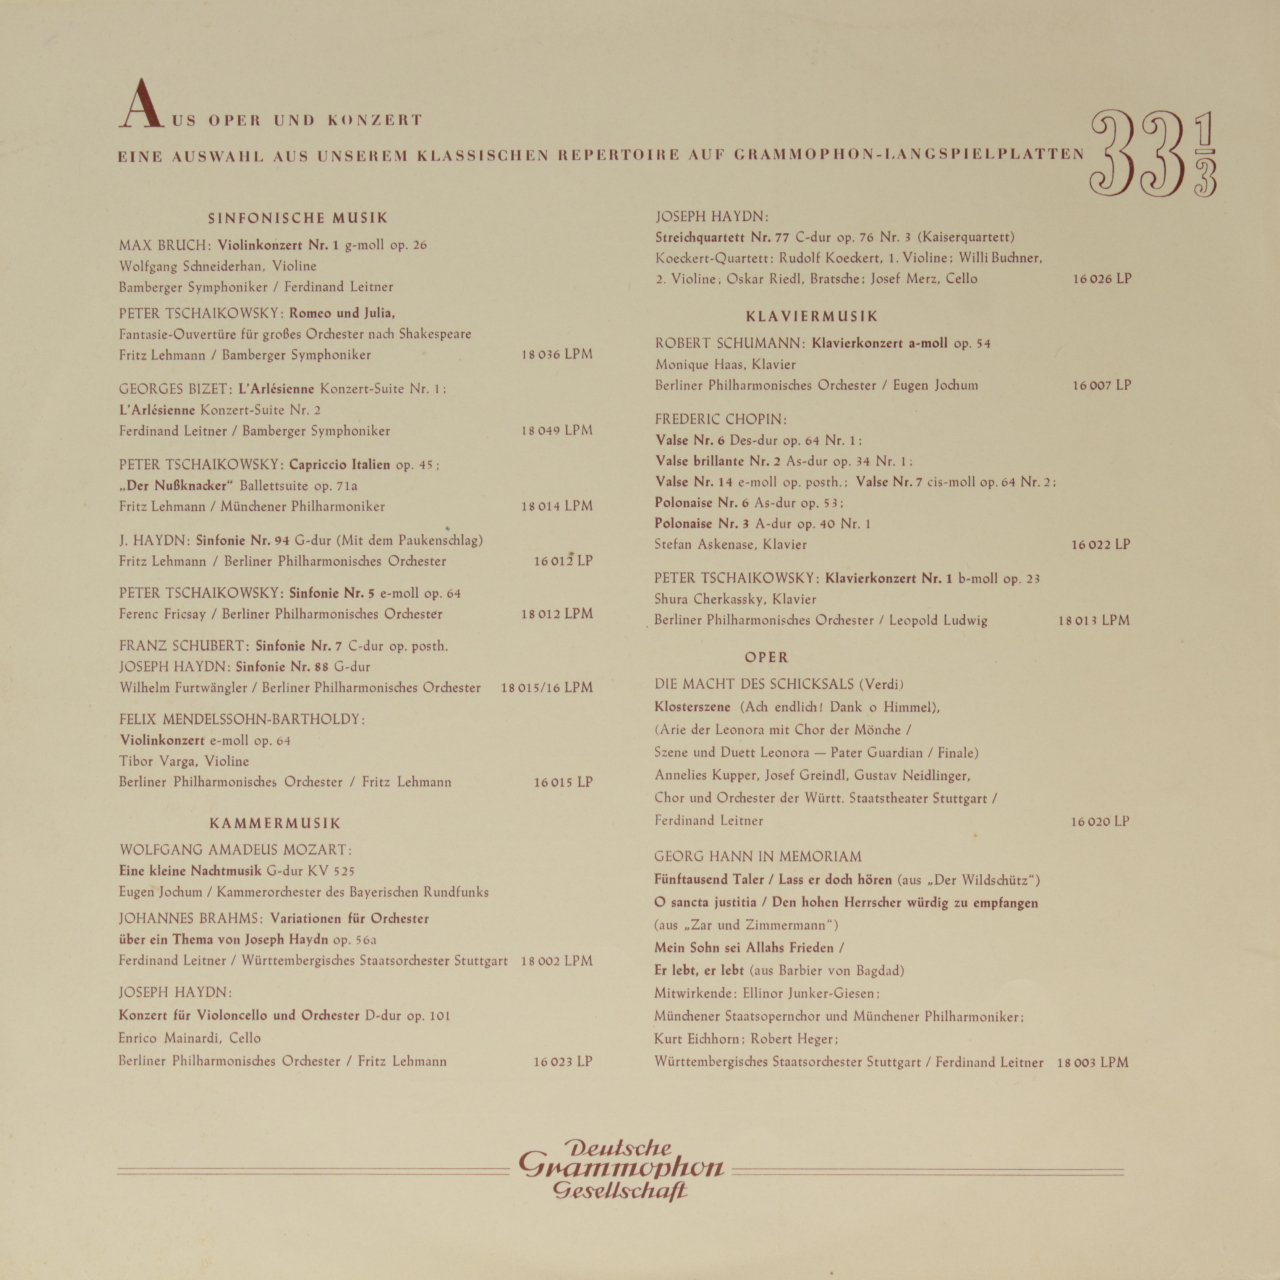 Bartok: Deux Portraits op. 5 / Blacher: Orchester-Variationen über ein Thema von Paganini op. 26